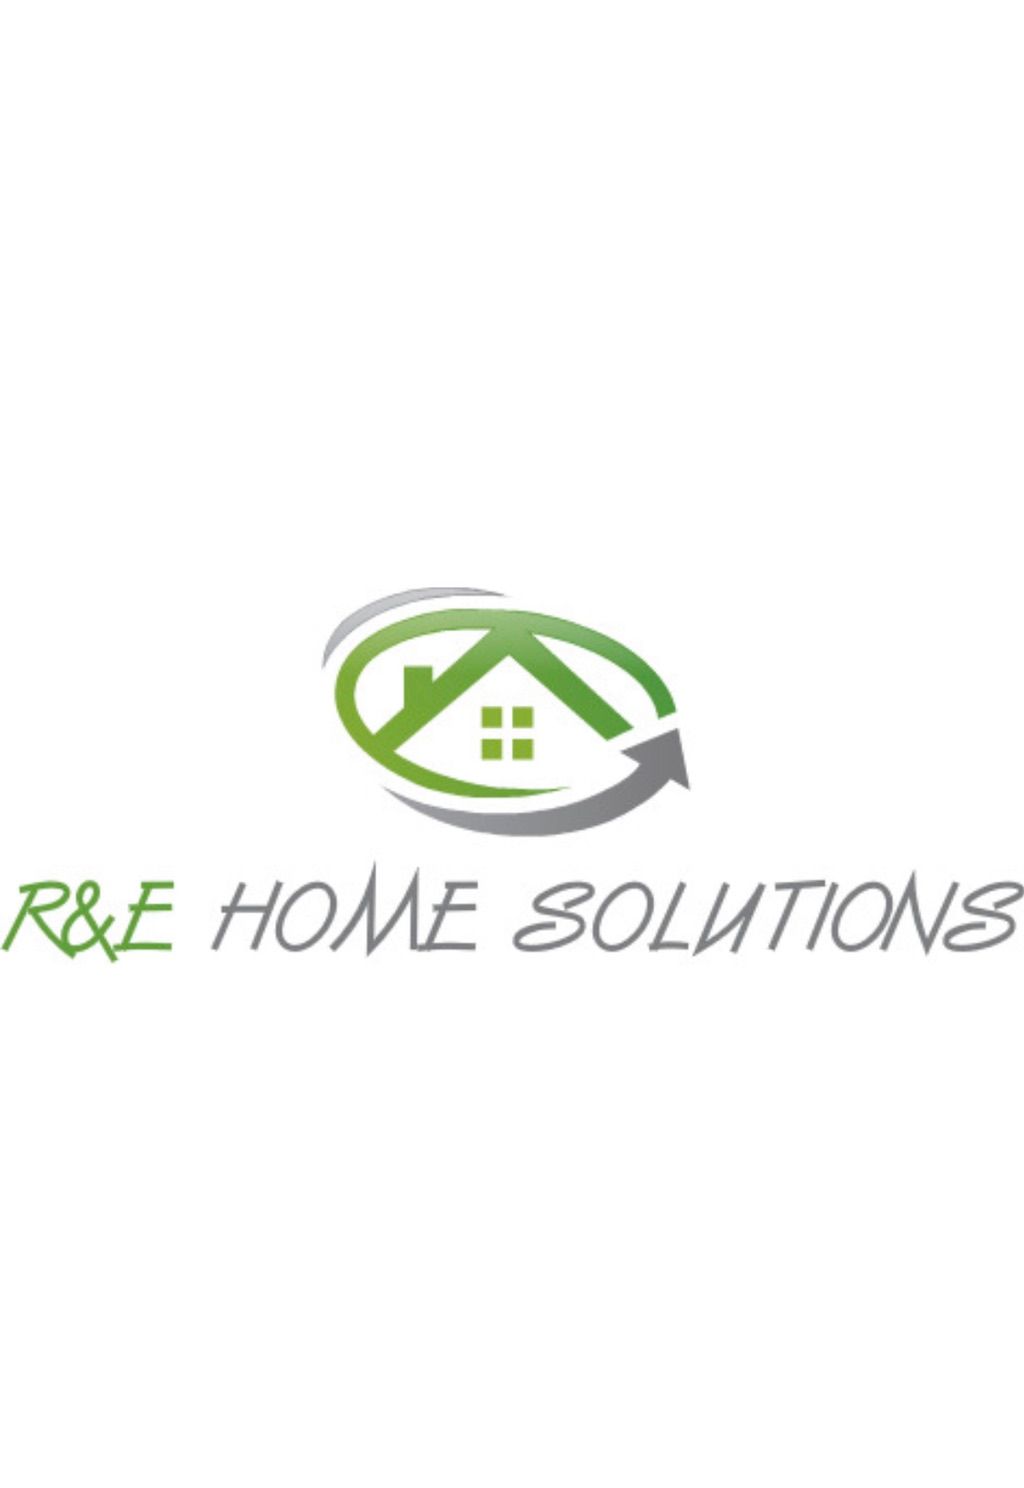 R&E HOME SOLUTIONS